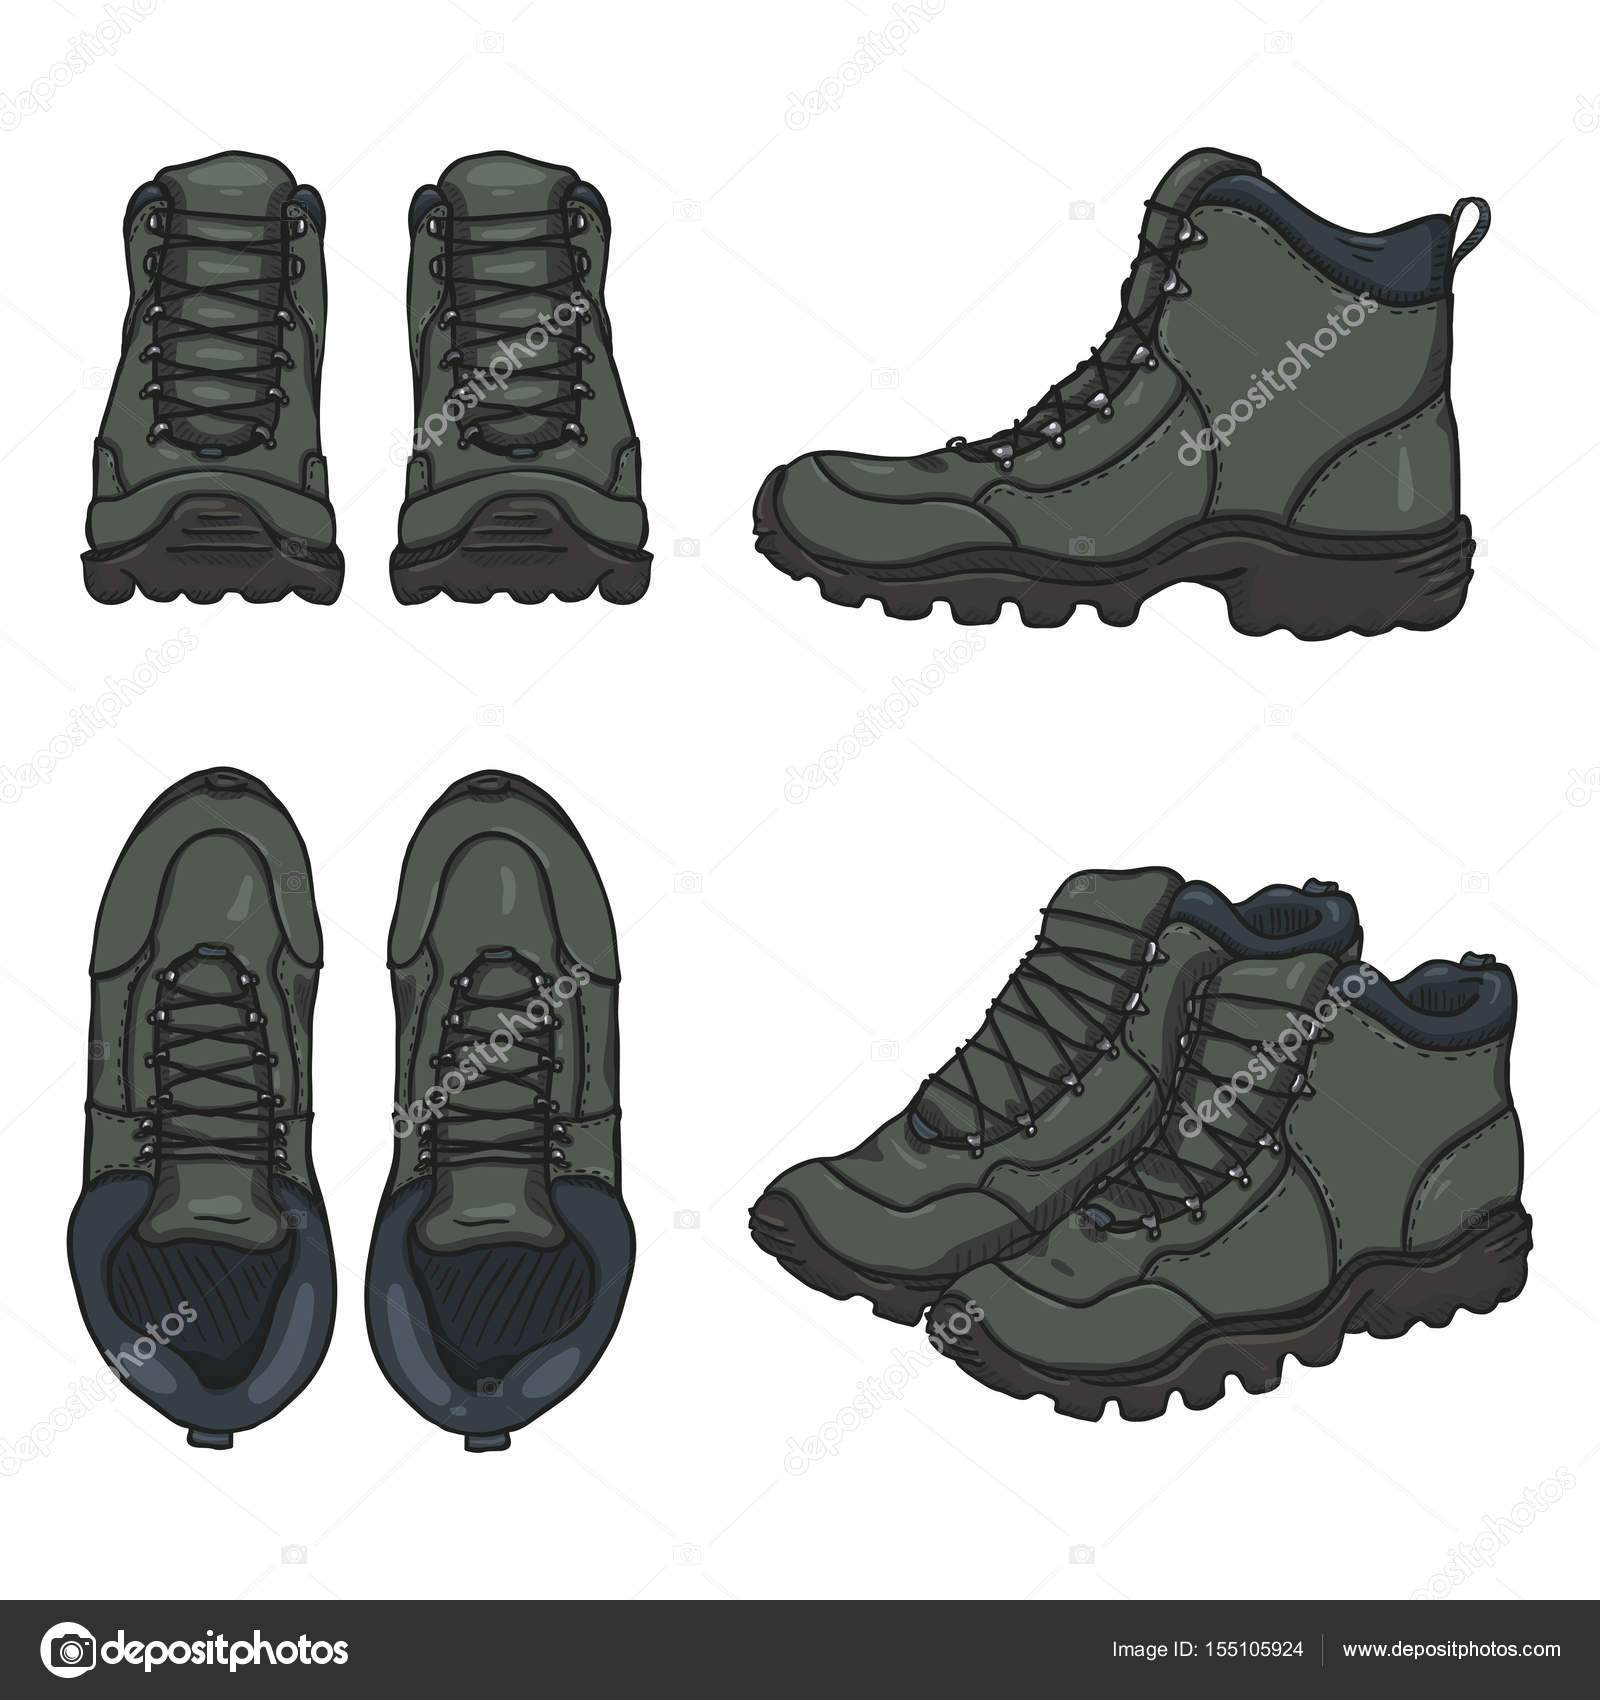 Hiking boots cartoon Vector Art Stock Images | Depositphotos